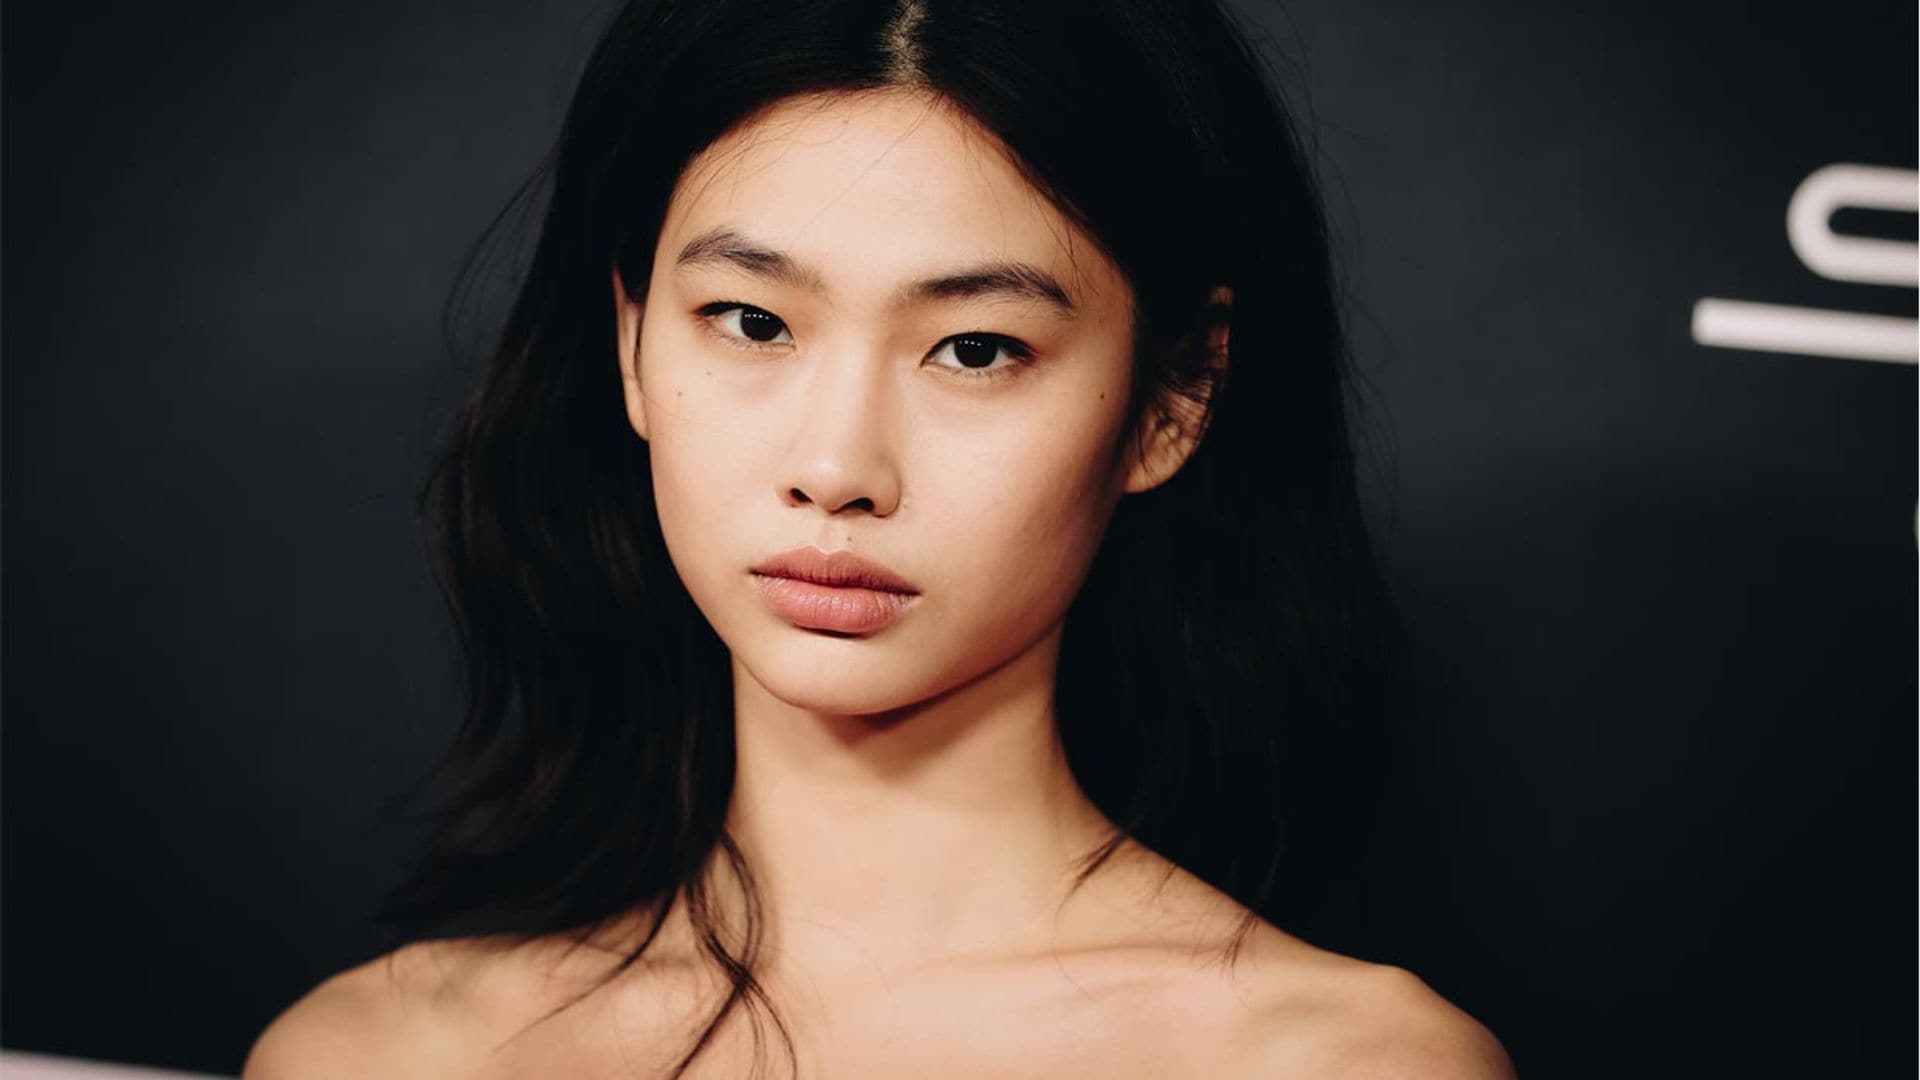 Todas las tendencias coreanas de maquillaje que se han hecho virales y querrás probar